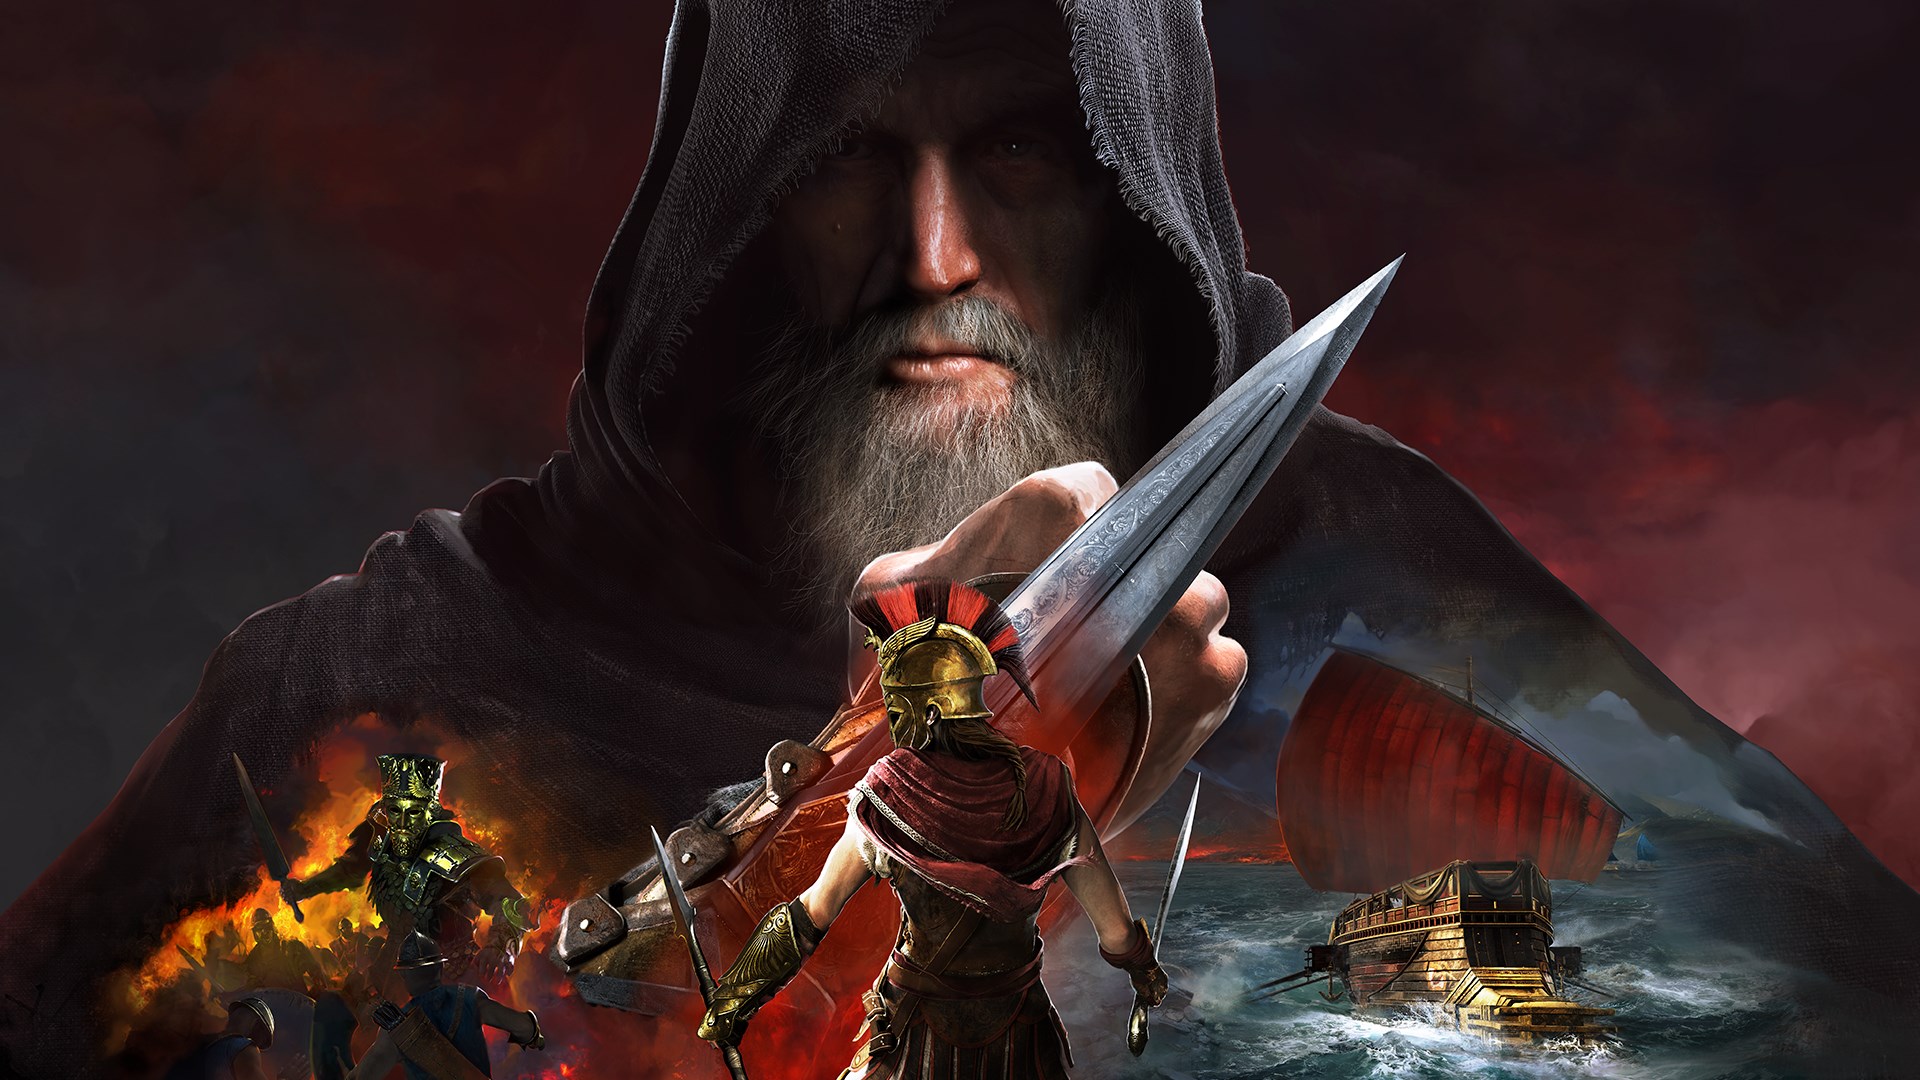 Assassin’s Creed Odyssey – Legado da Primeira Lâmina